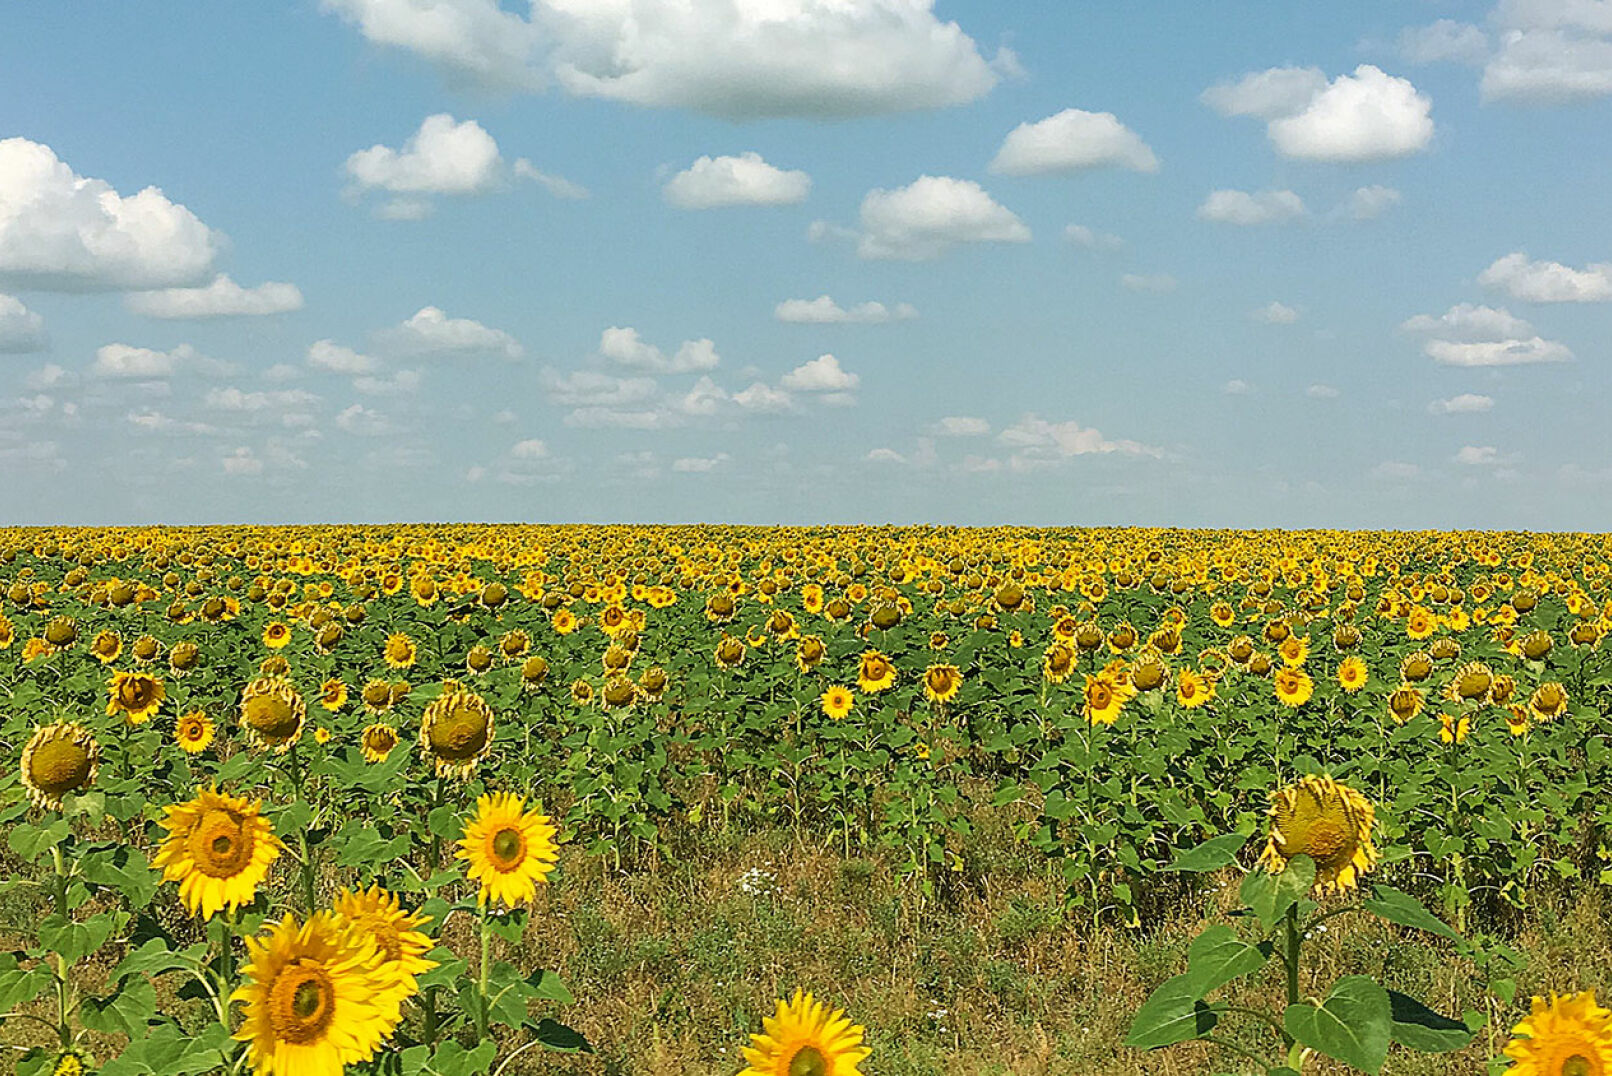 Fast schon ein Hirsch - Kasachstan - Am dritten Tag ging es per Auto durch ewig lange und in voller Blüte stehender Sonnenblumenfelder.